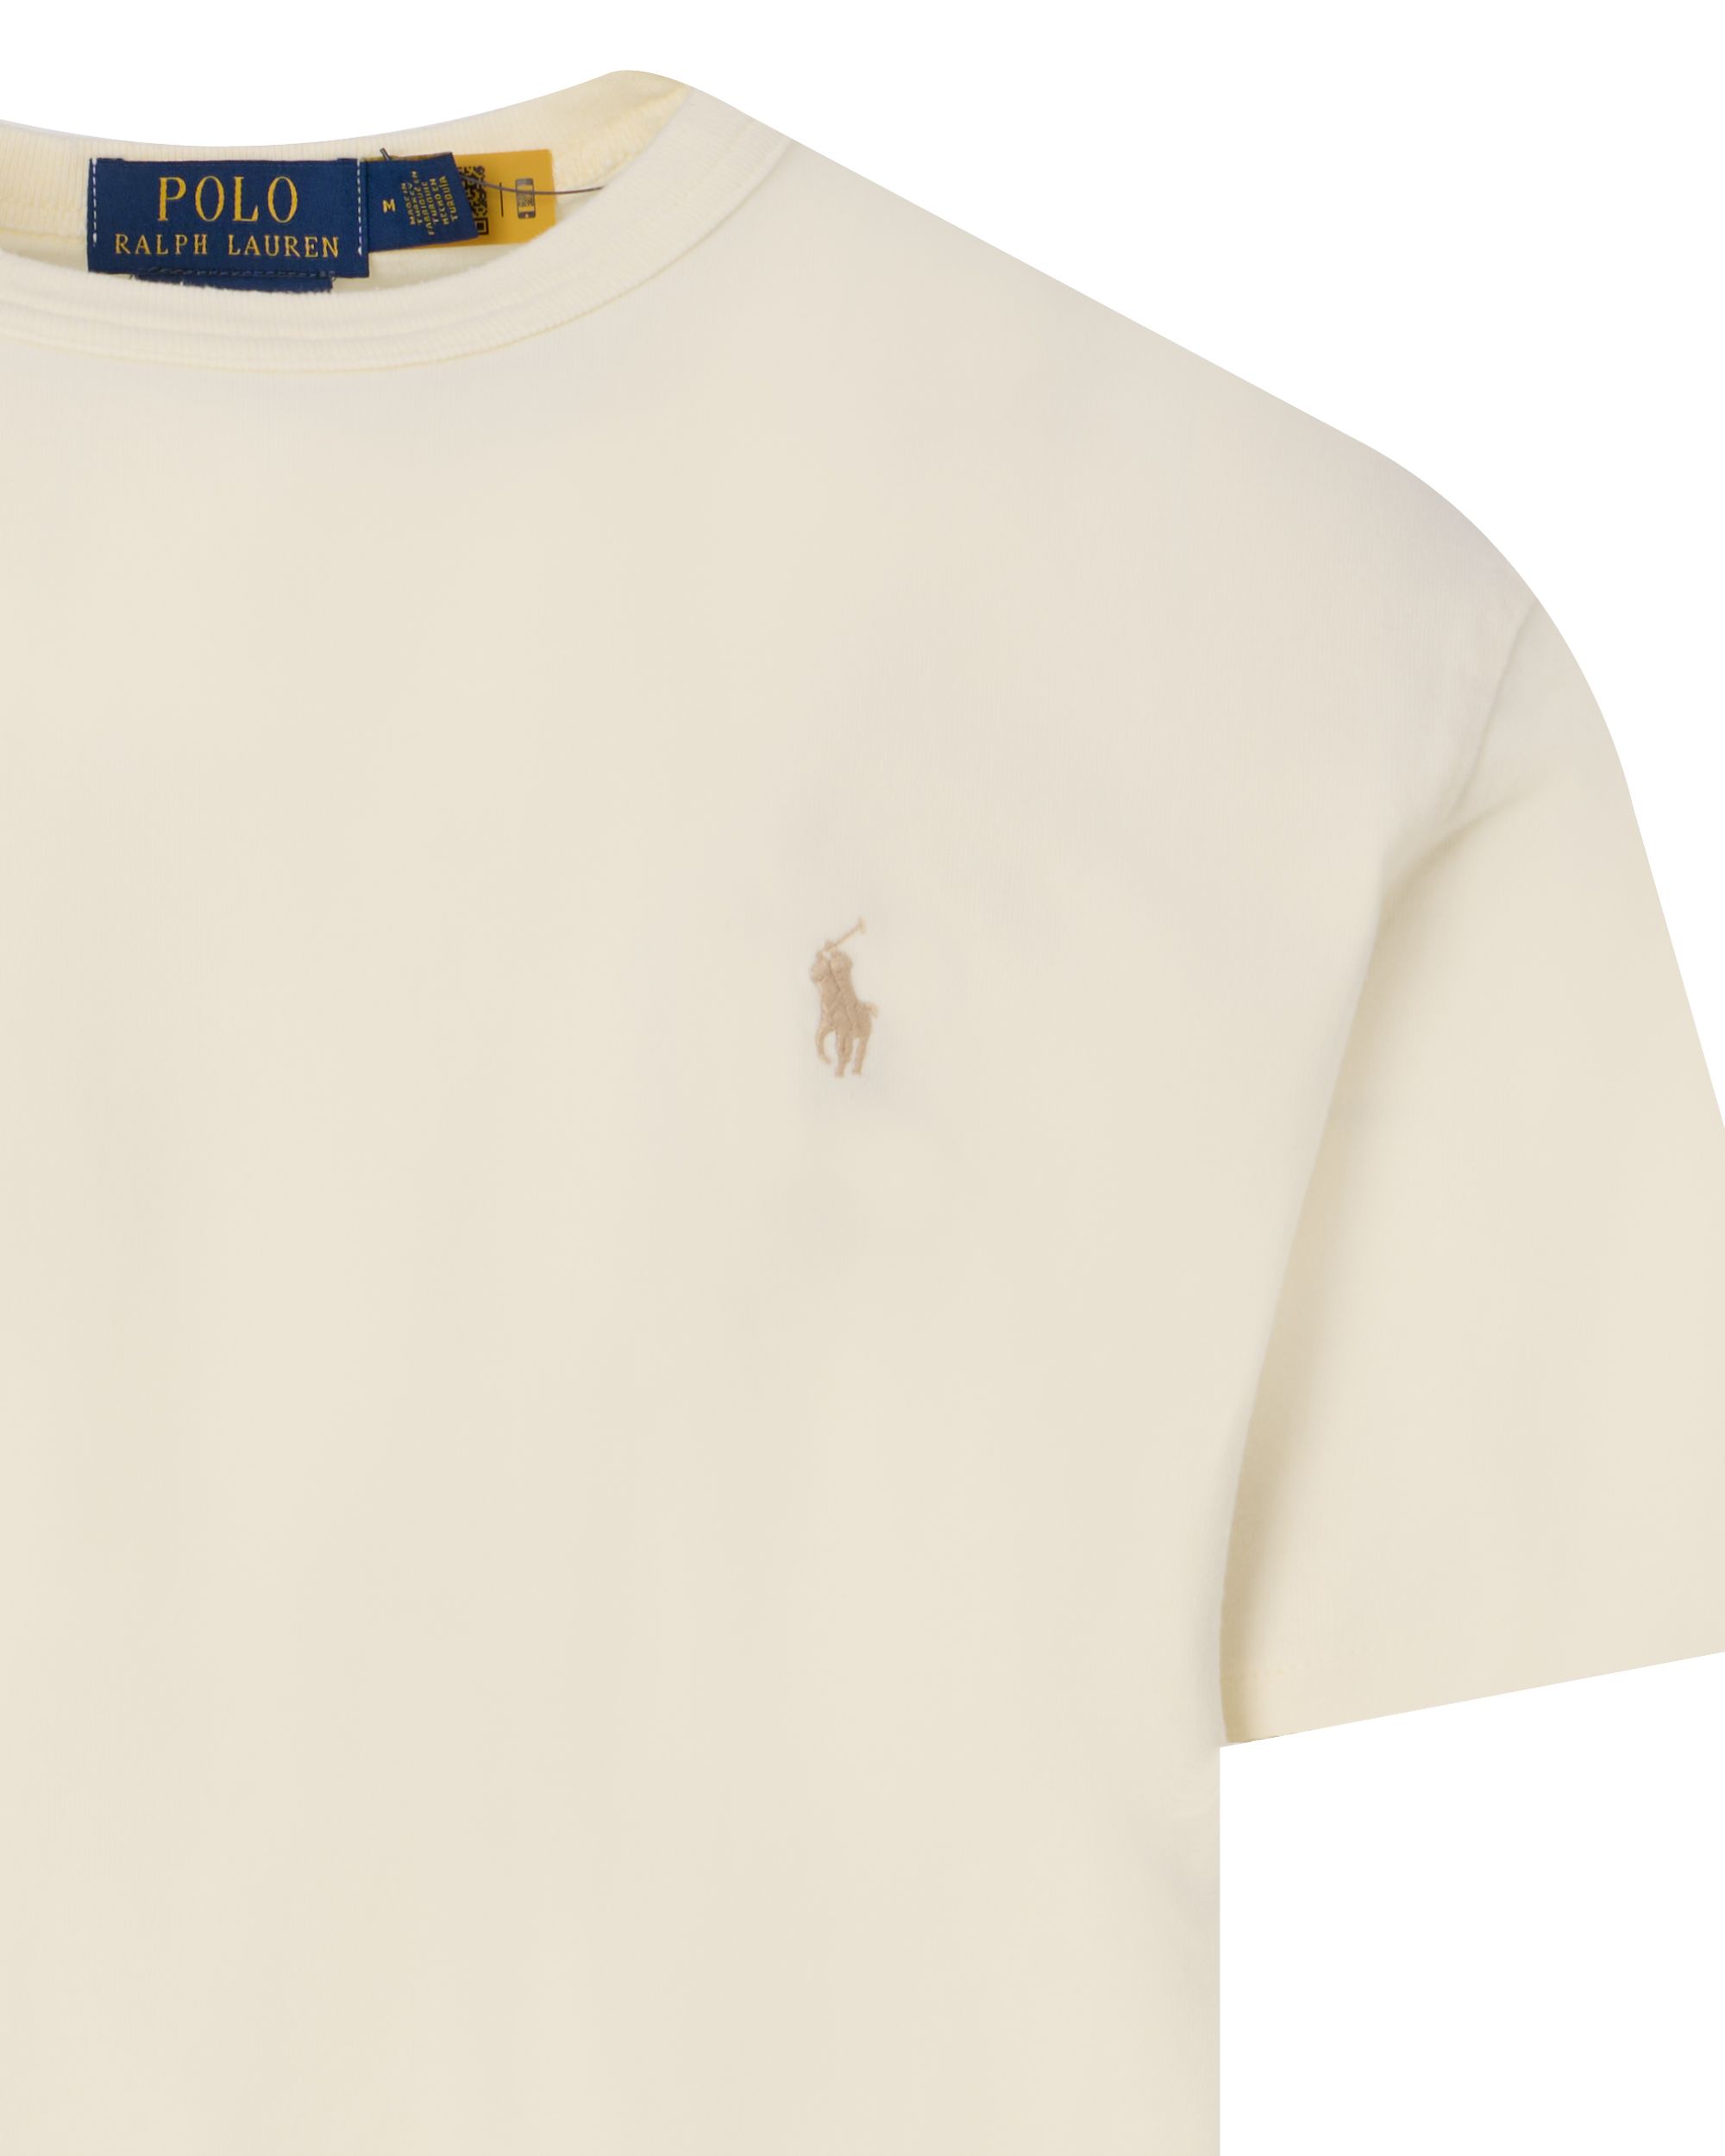 Polo Ralph Lauren T-shirt KM Ecru 095323-001-L